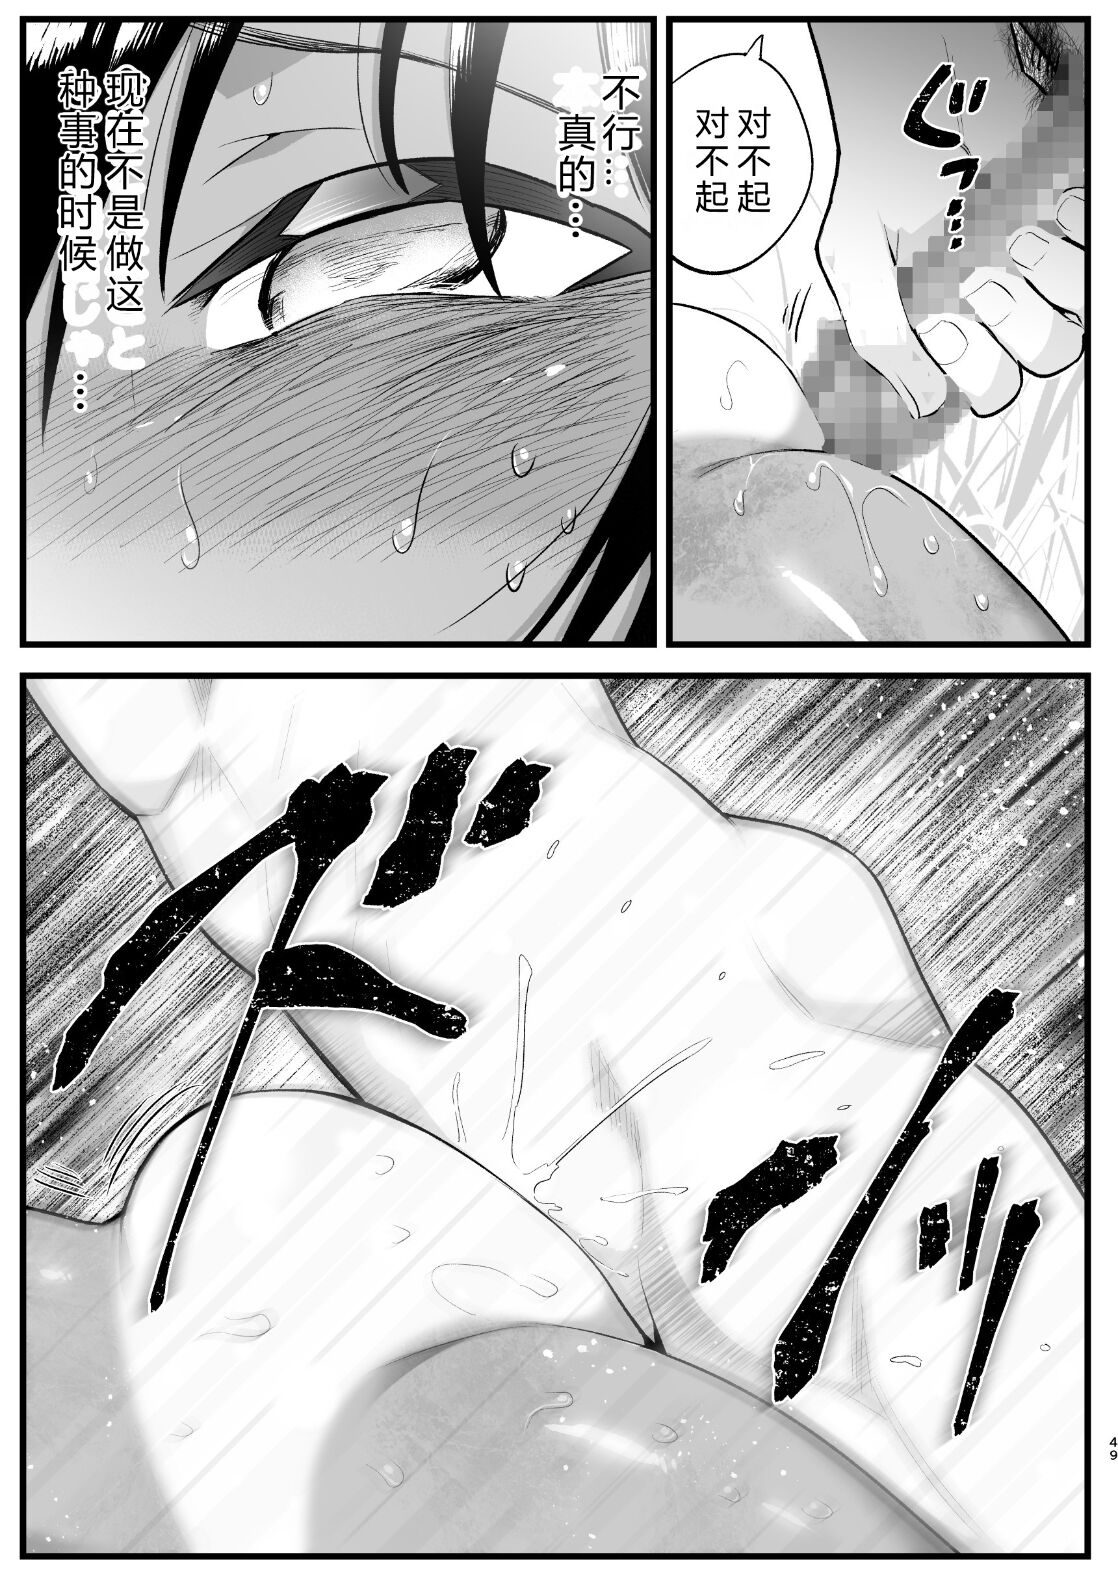 [OTOREKO (Toilet Komoru)] Mujintou Onna-san Zenshin Dorodarake de Pakorareru!: Yoshimura-san 6-wa [vexling个人机翻] [OTOREKO (トイレ籠)] [2020.07] 無人島JK! ちょろいよ吉村さん! 第6話 ~無人島女さん全身泥だらけでパコられる~[中国翻訳]